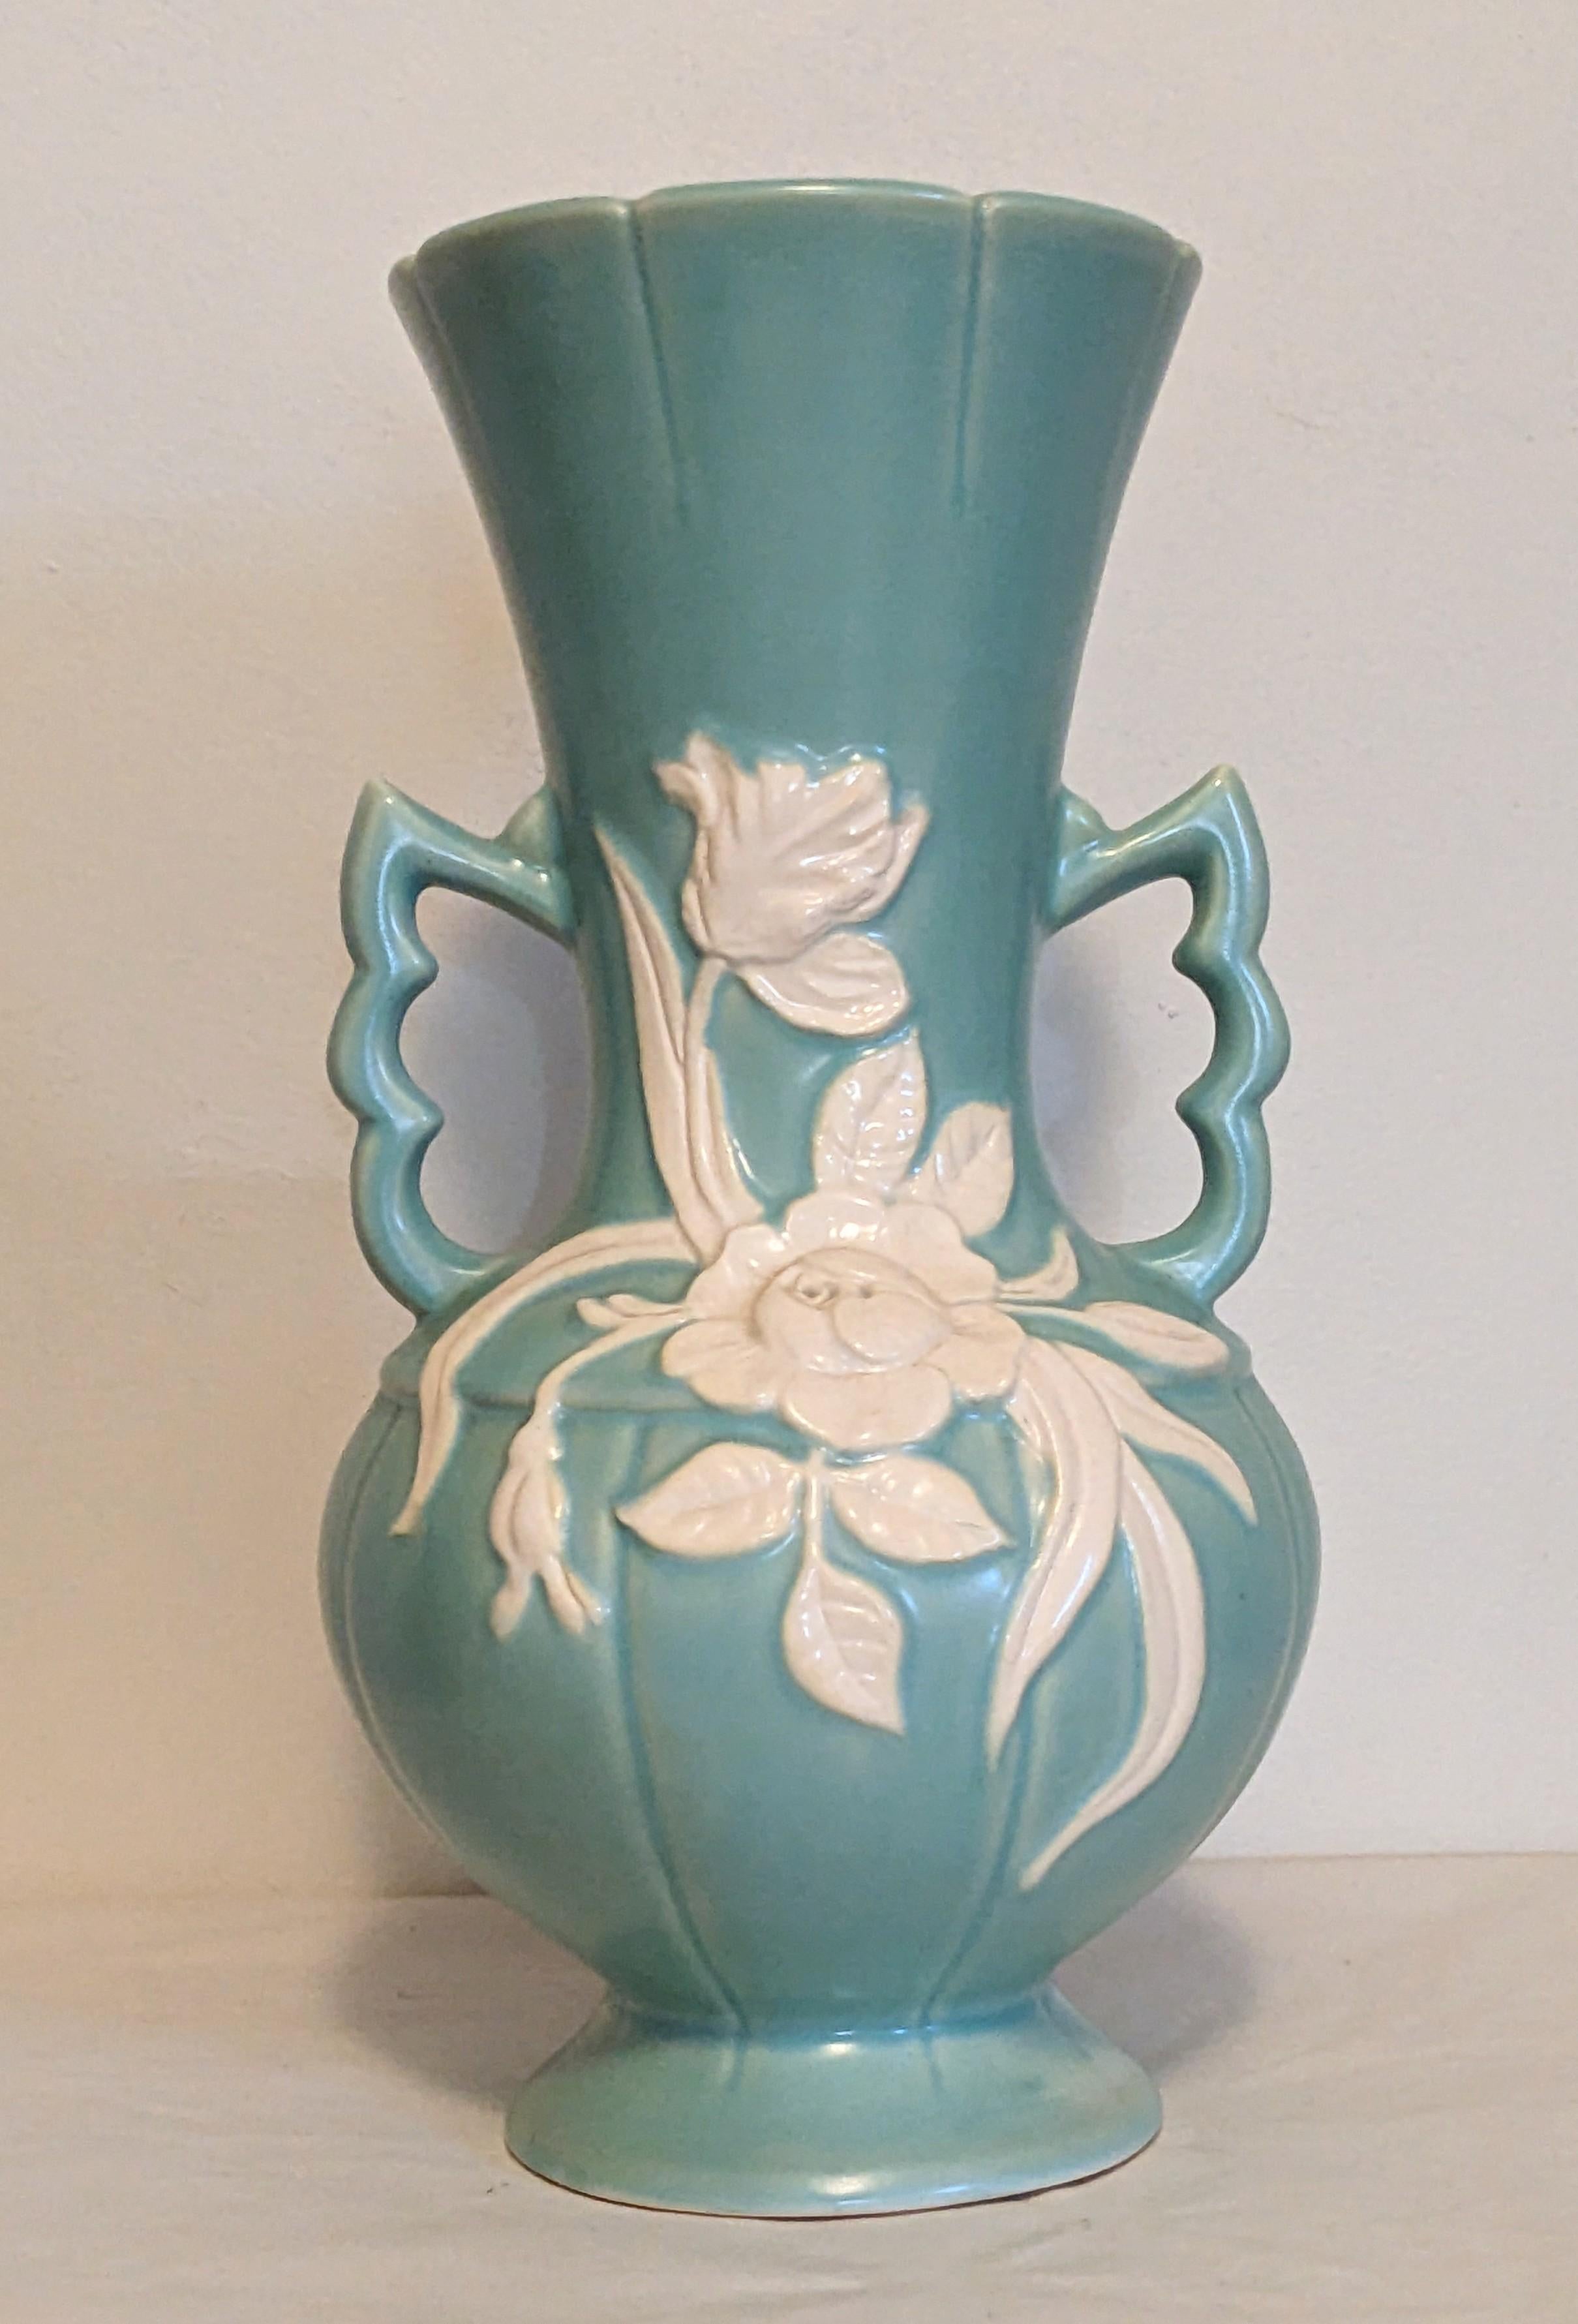 Attraktive Art-Deco-Vase aus Weller-Keramik in hellem Türkis mit elfenbeinfarbenen Blumenmotiven.
1940er Jahre USA. 13